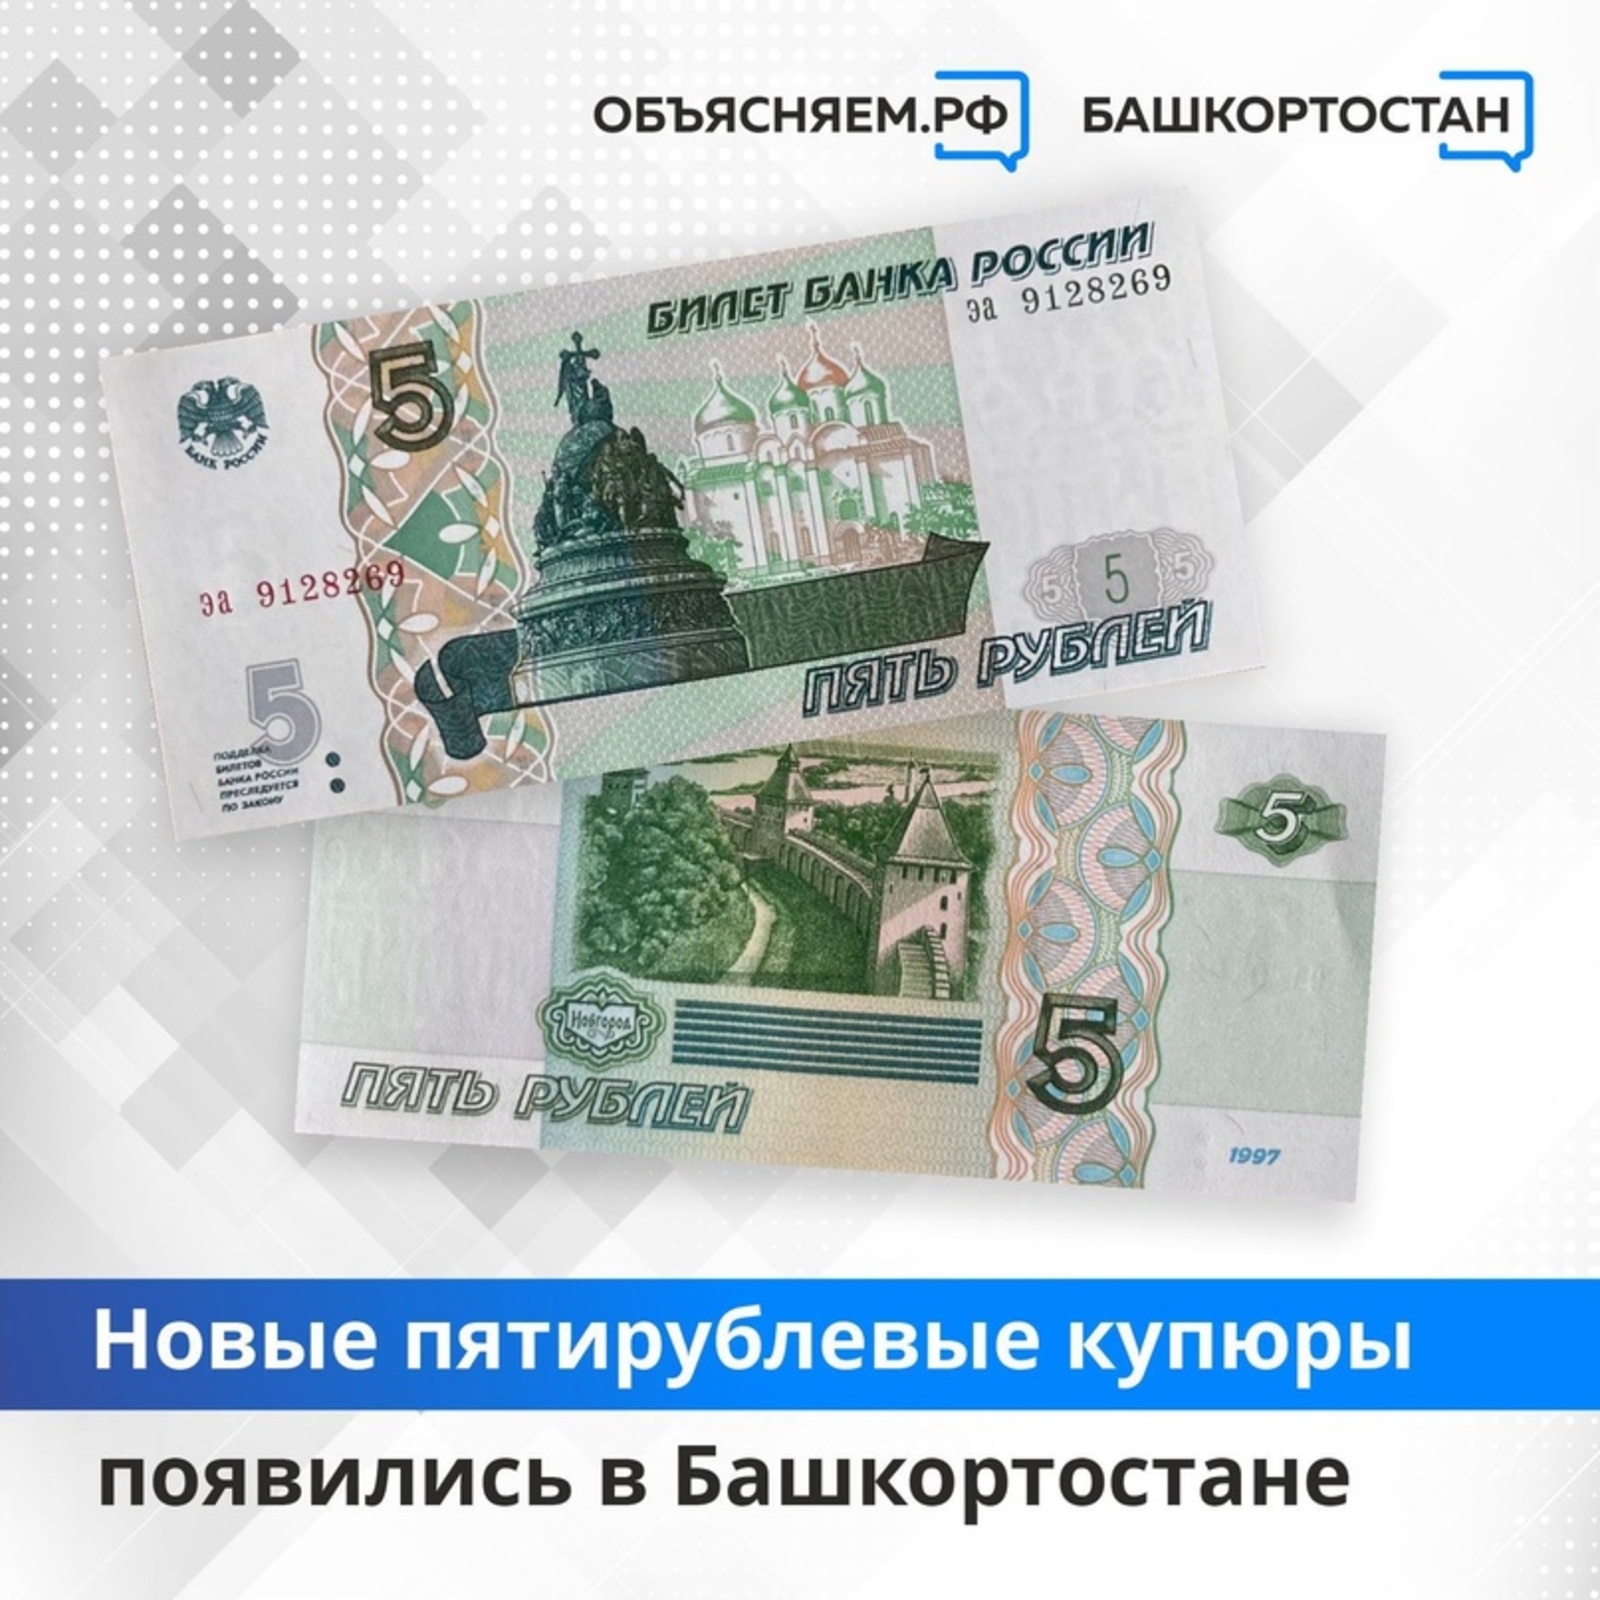 Новые пятирублевые купюры появились в Башкортостане